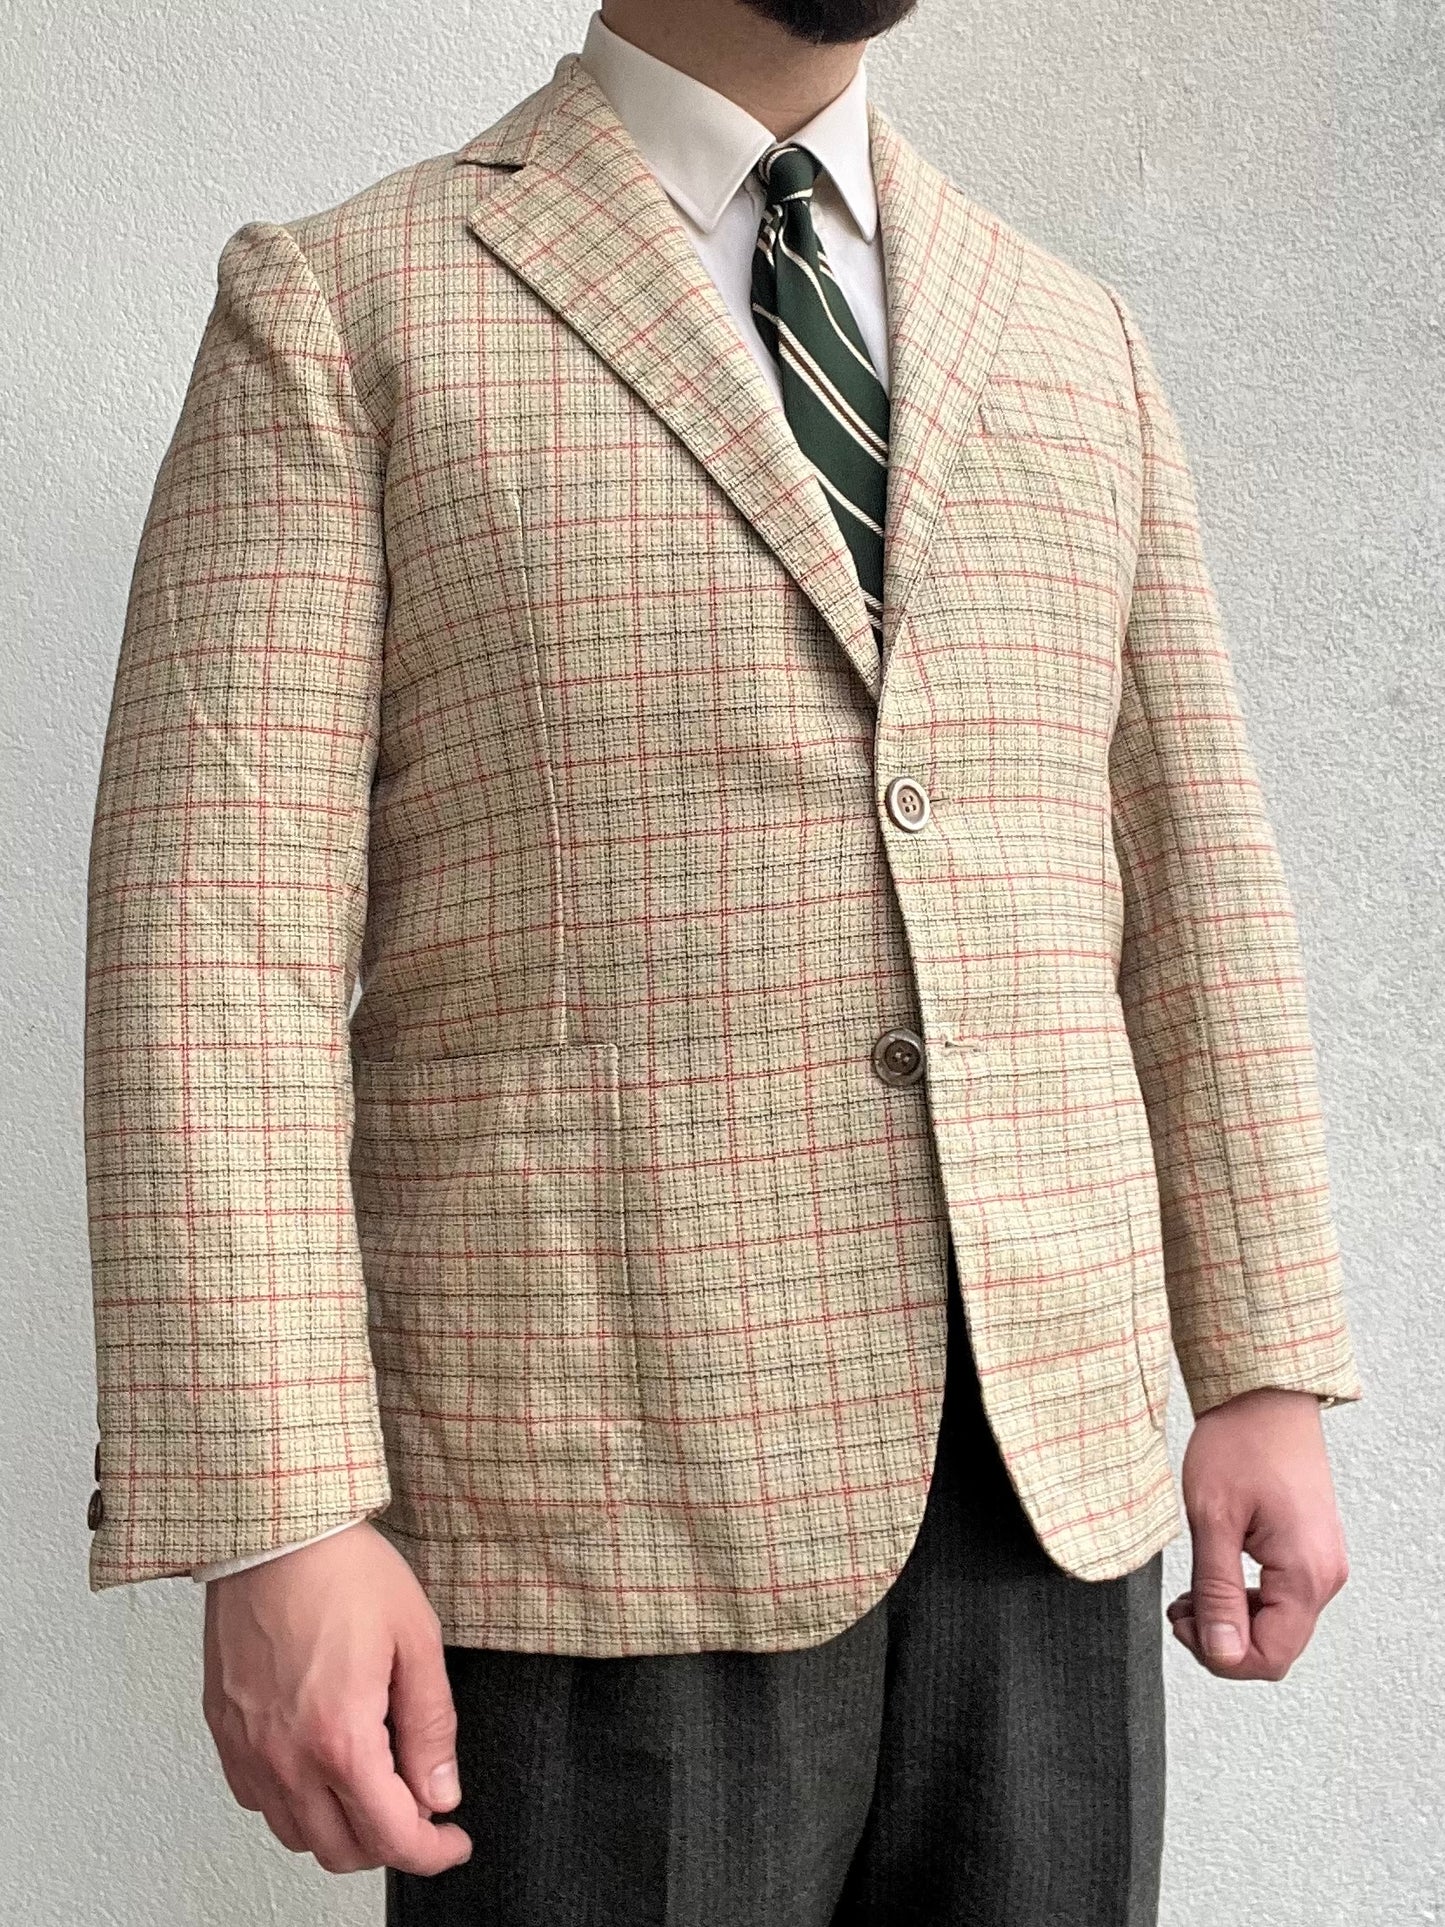 Giacca sartoriale anni ‘70 in lino e lana tg. 48